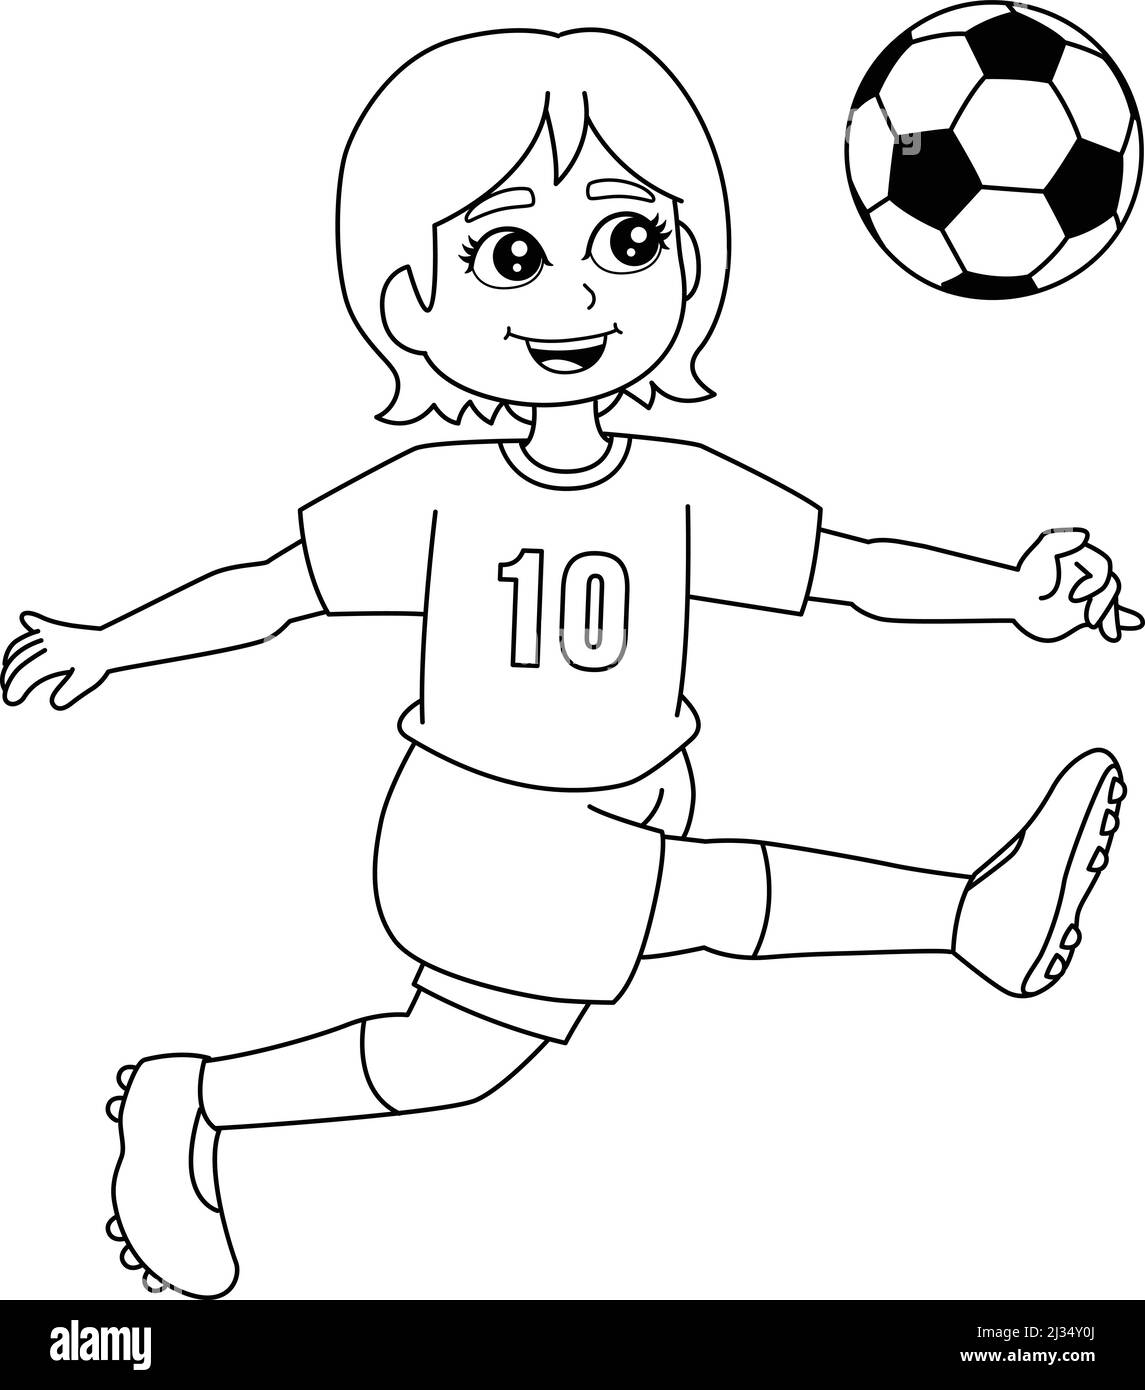 Fille jouant Soccer coloriage page isolé Illustration de Vecteur